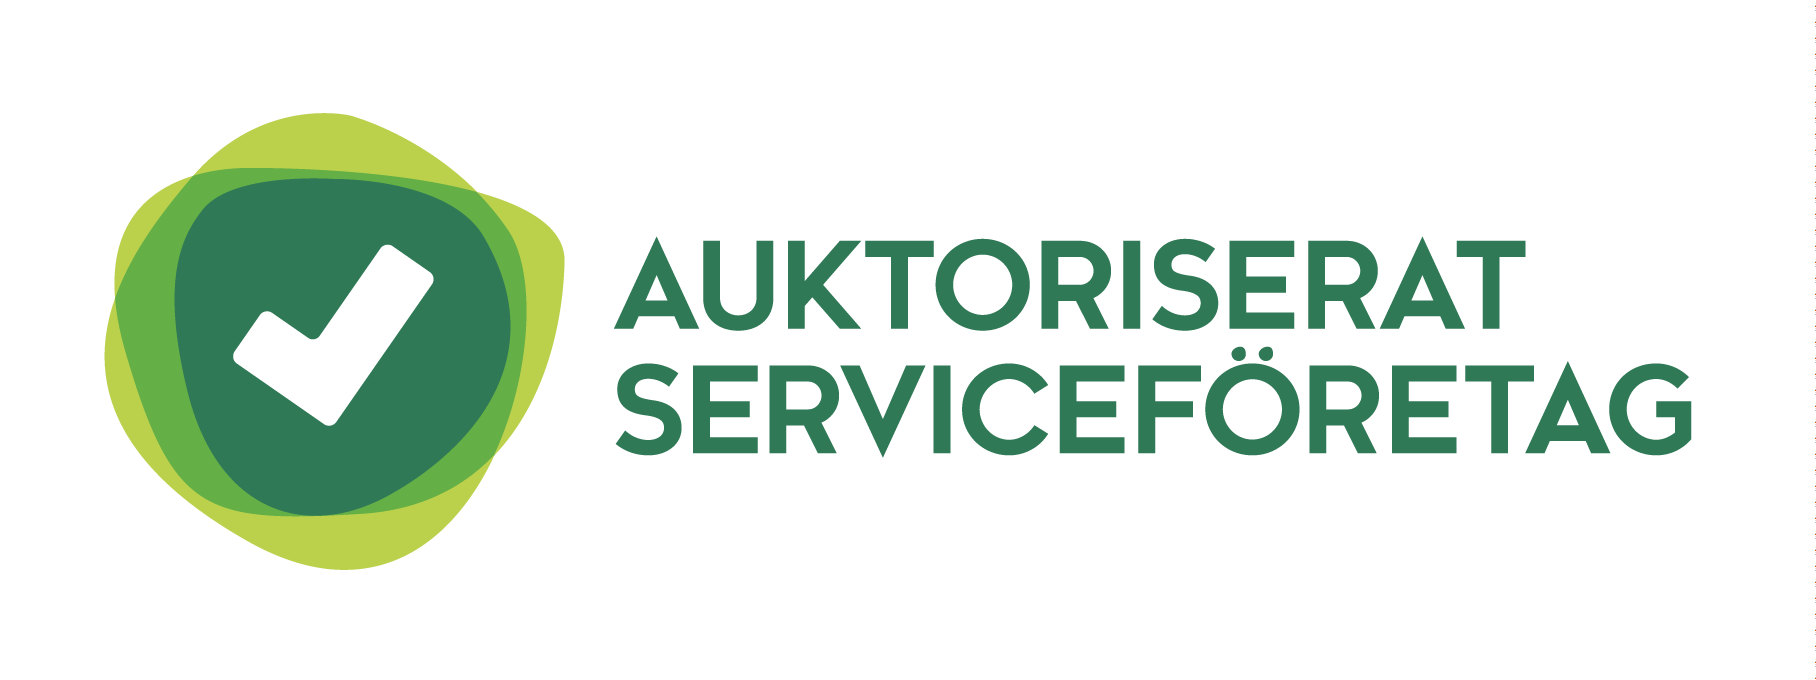 Hushållstjänst i Sverige AB är ett auktoriserat serviceföretag via Almega